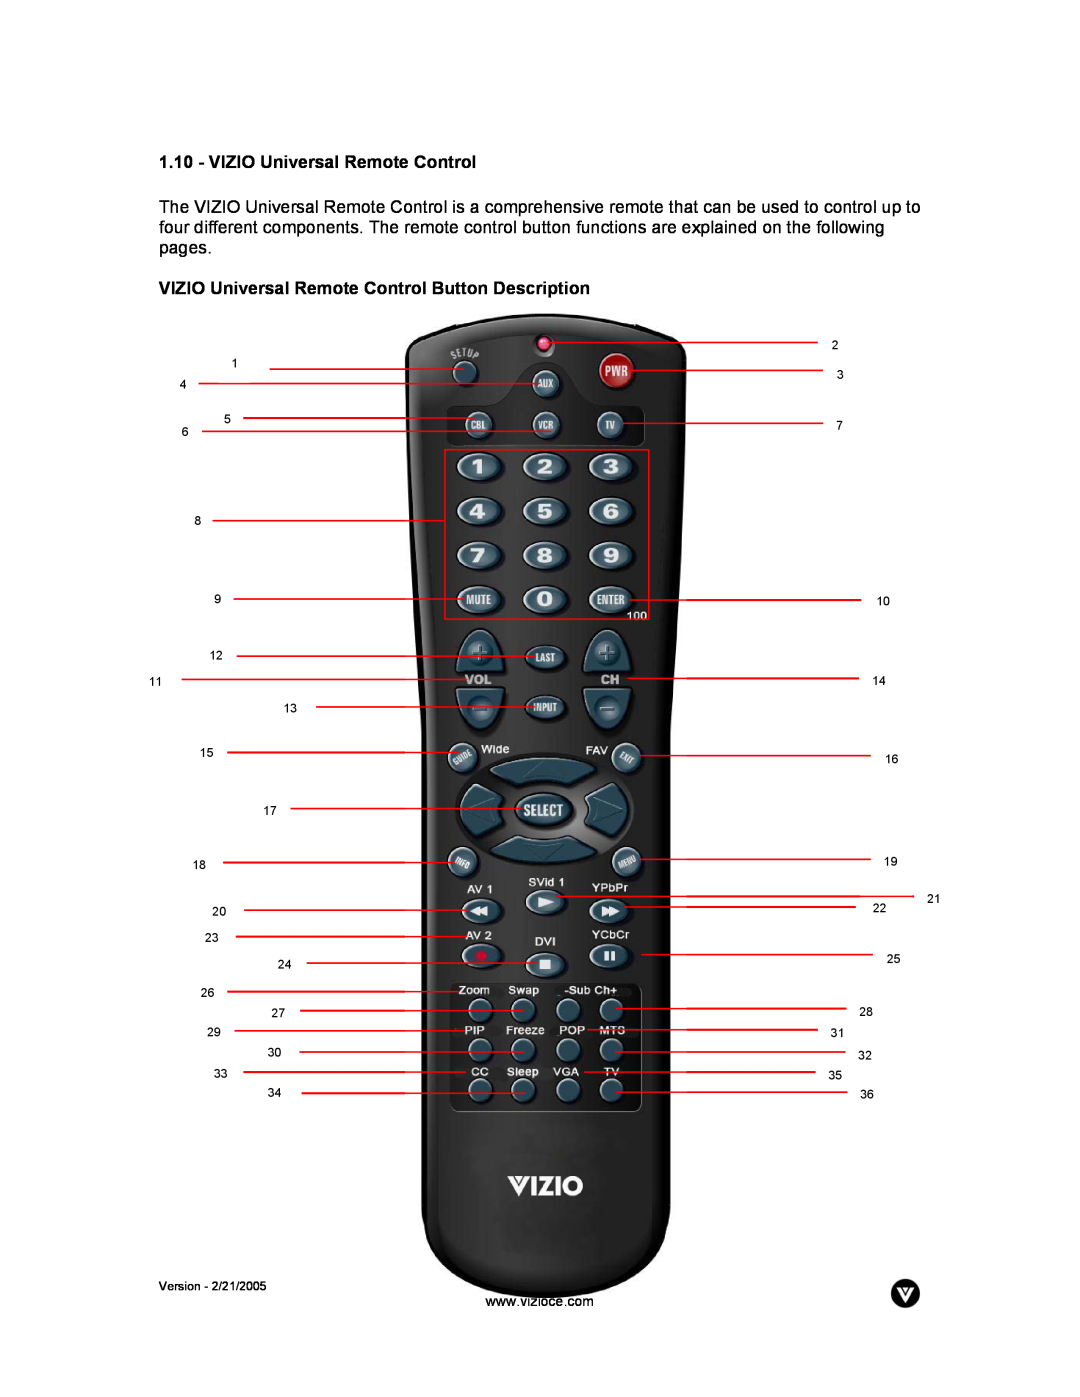 Vizio P42 manual VIZIO Universal Remote Control Button Description, Version - 2/21/2005 